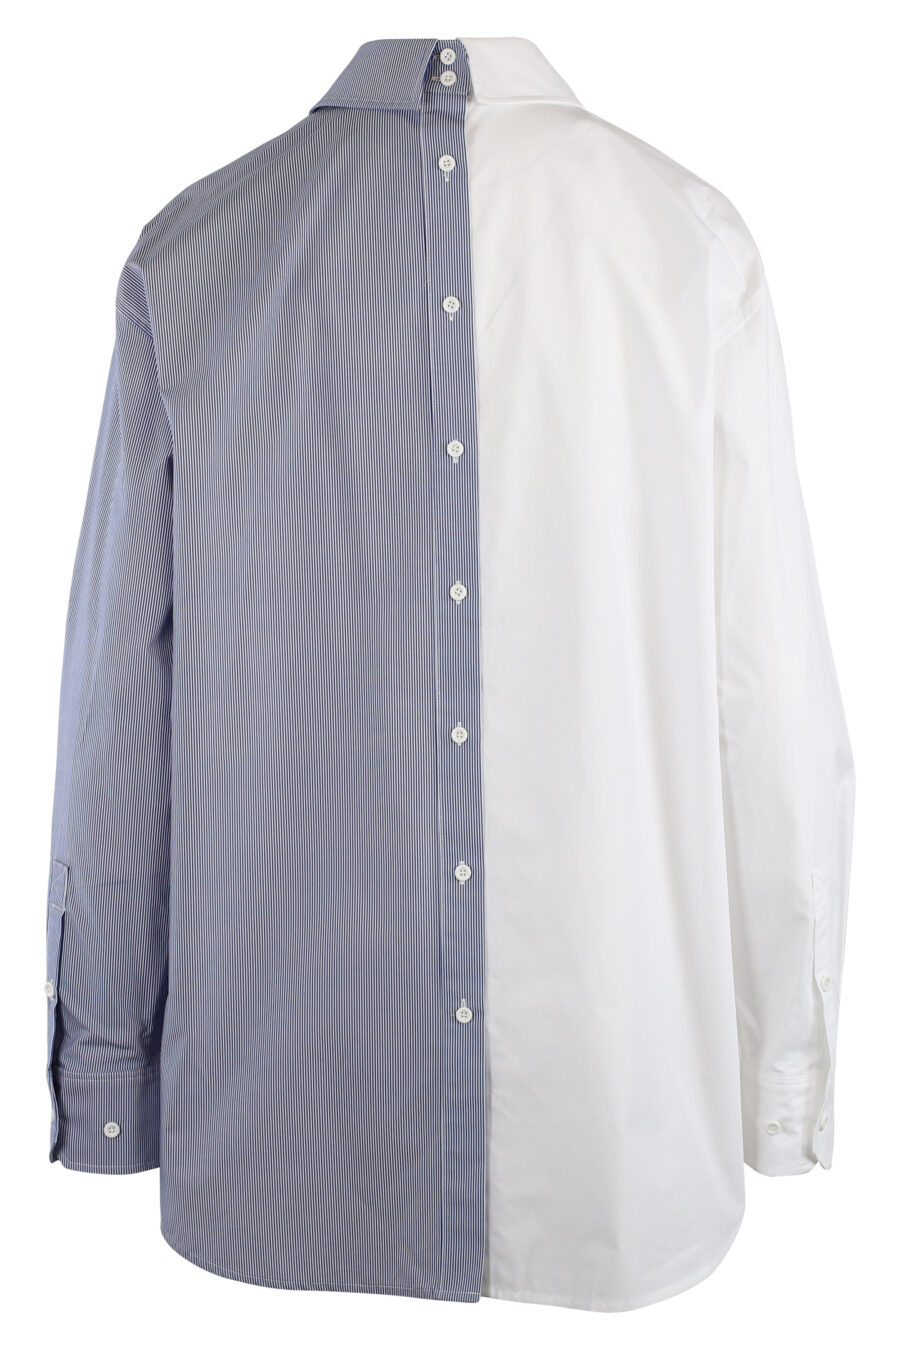 Camisa bicolor blanca y azul - IMG 5485